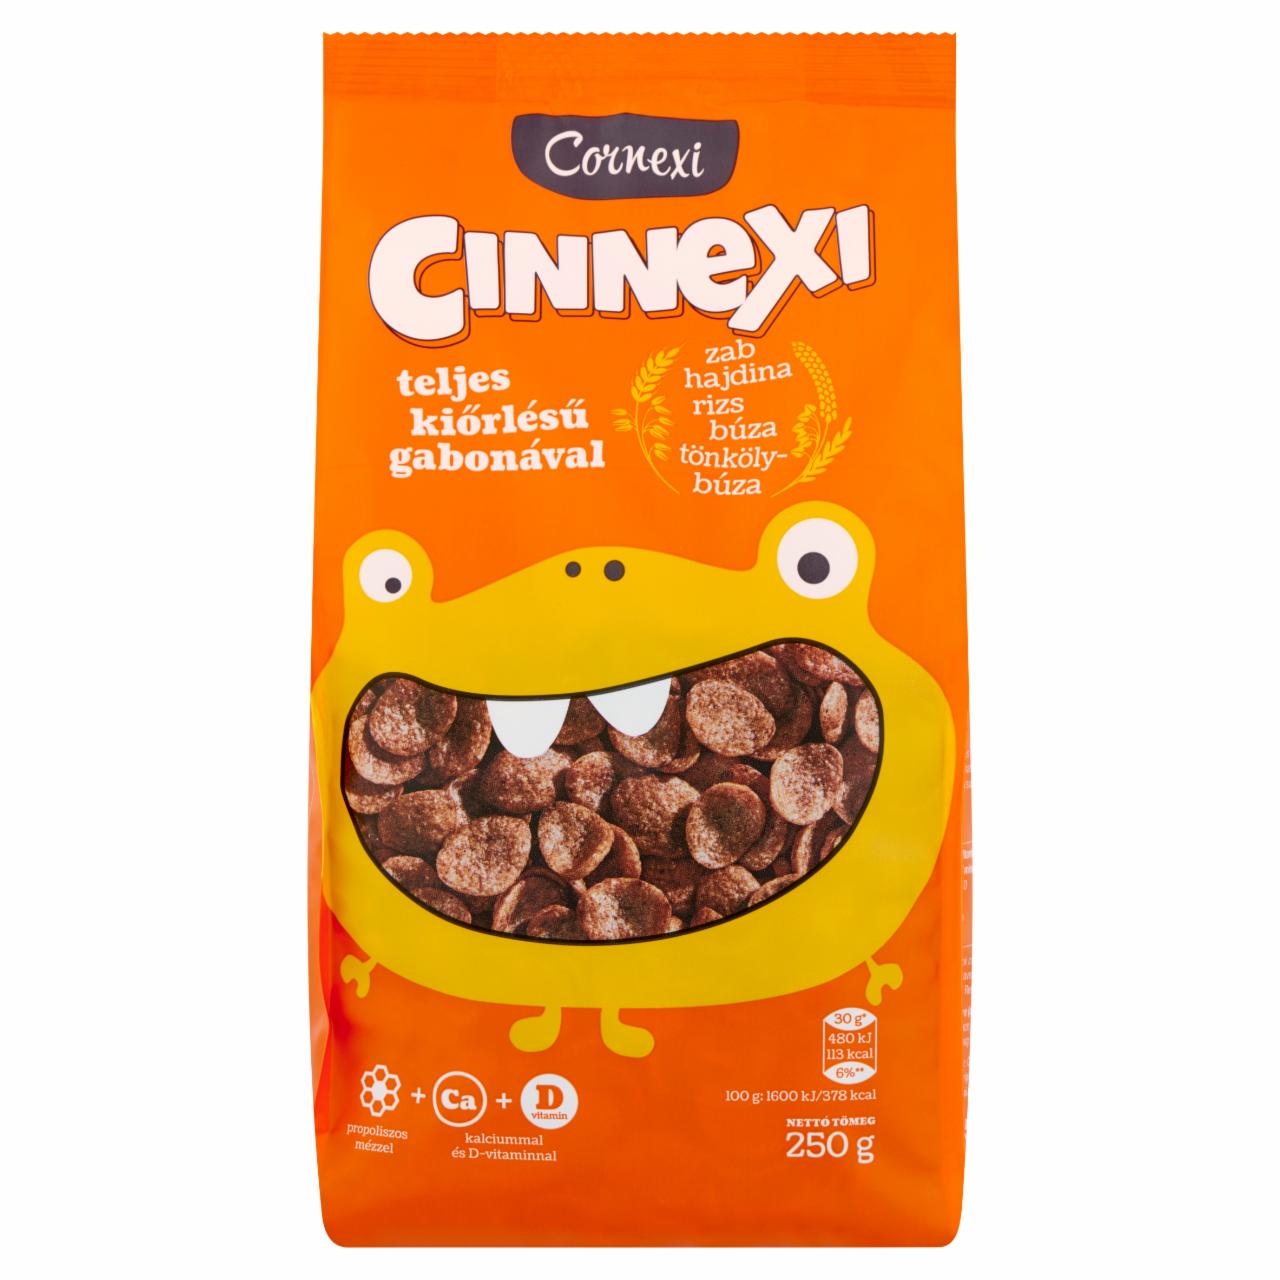 Képek - Cornexi Cinnexi fahéjas flakes teljes kiőrlésű gabonával, Ca+D-vitaminnal 250 g